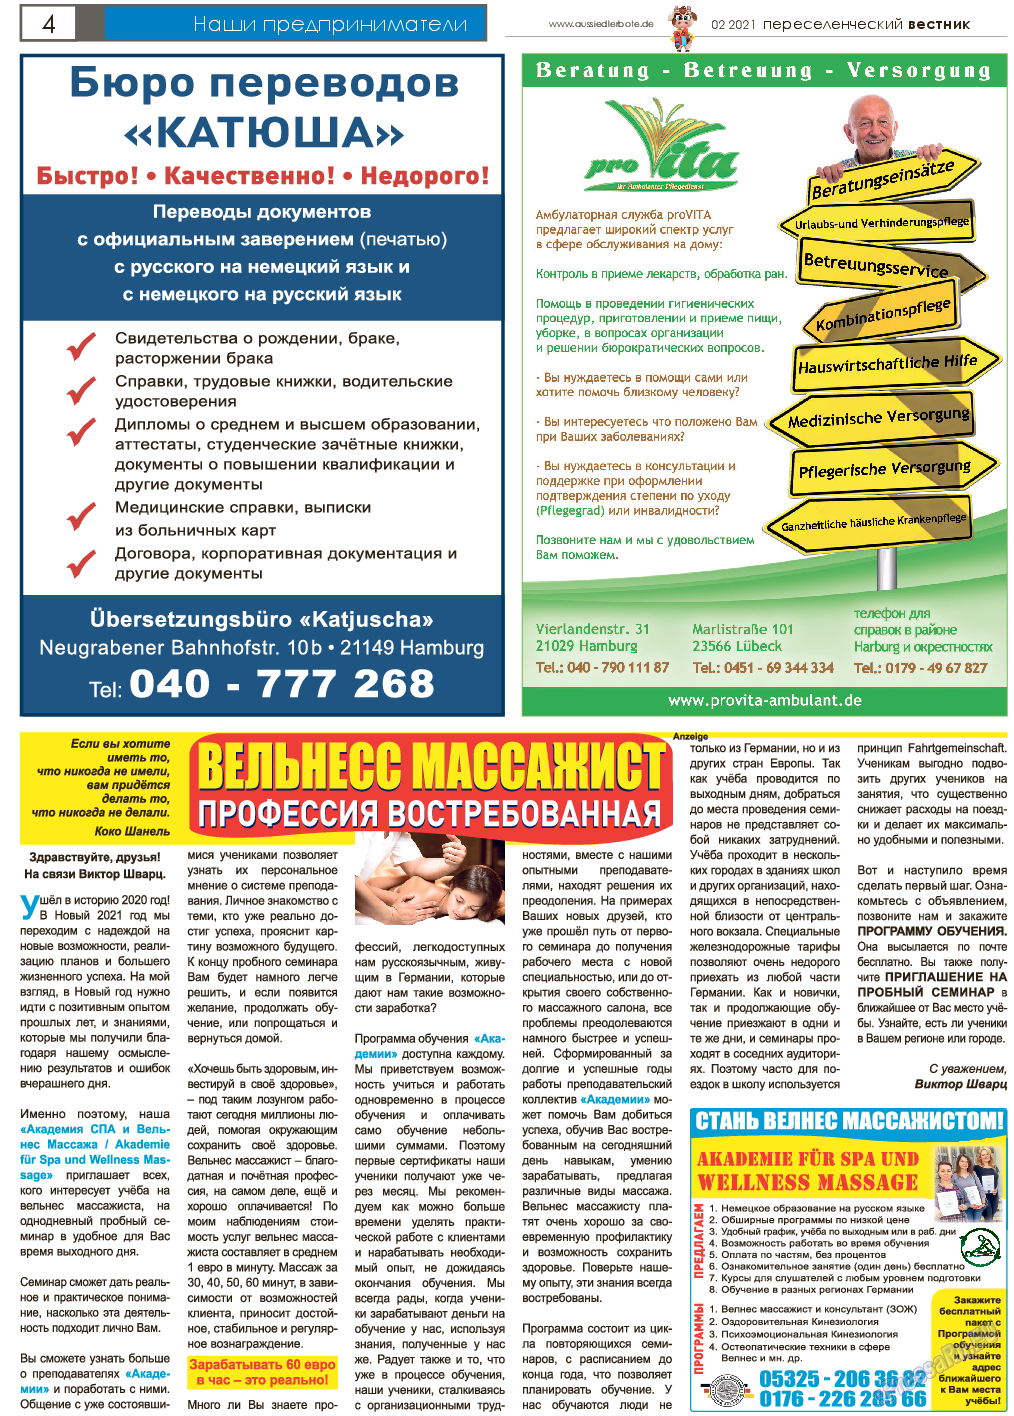 Переселенческий вестник, газета. 2021 №2 стр.4